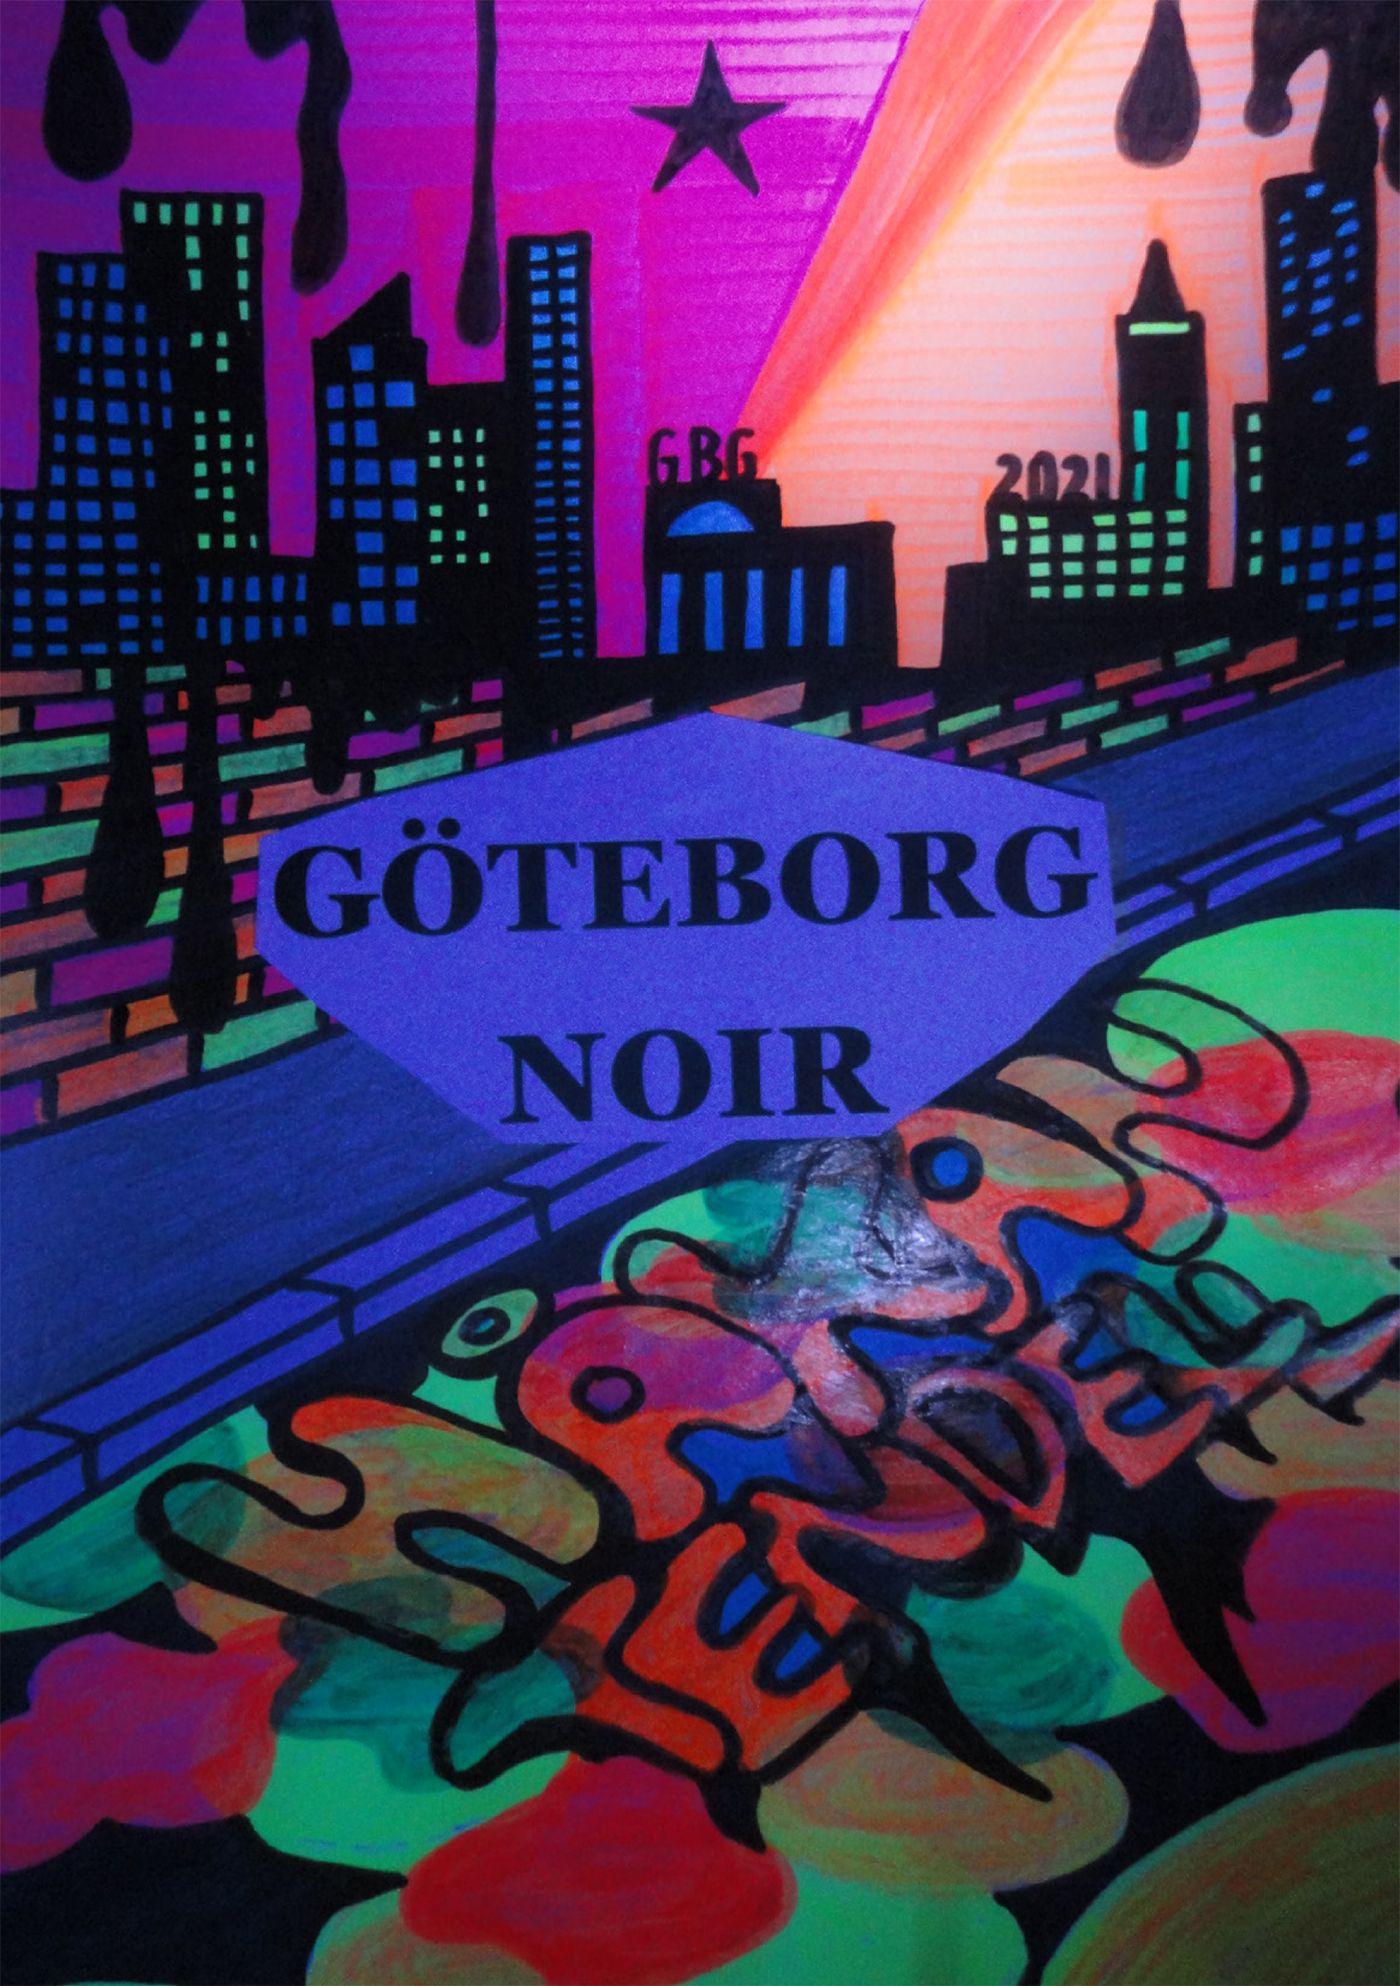 Göteborg Noir, eBook by Håkan Tendell